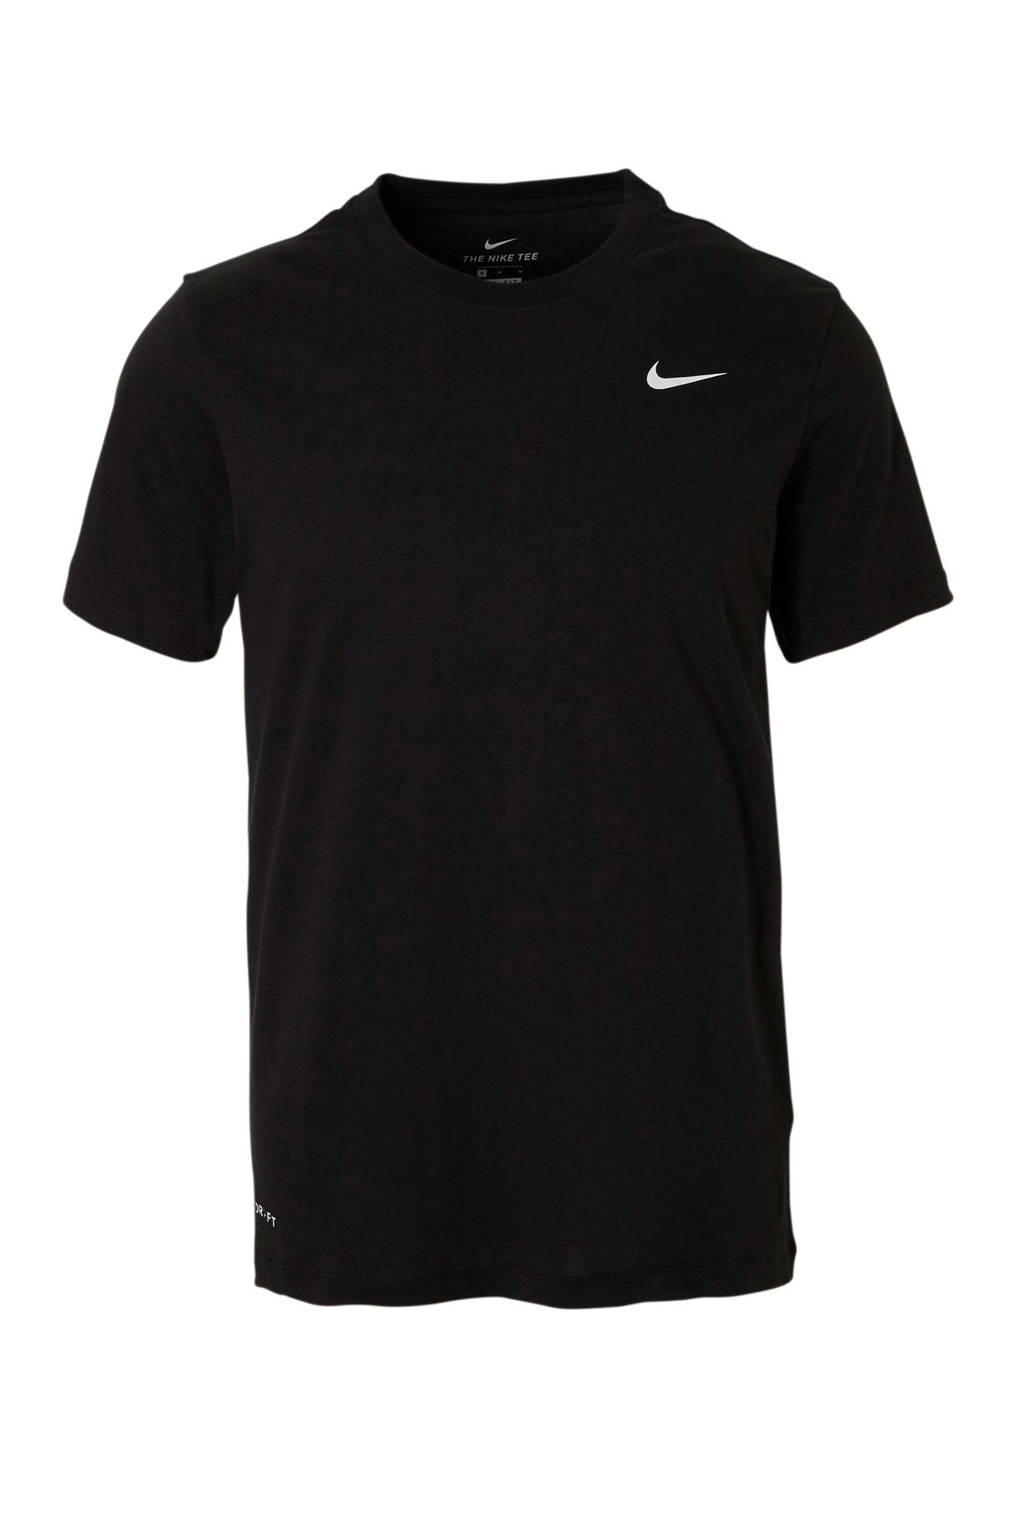 Zwarte heren Nike sport T-shirt van katoen met logo dessin, korte mouwen en ronde hals